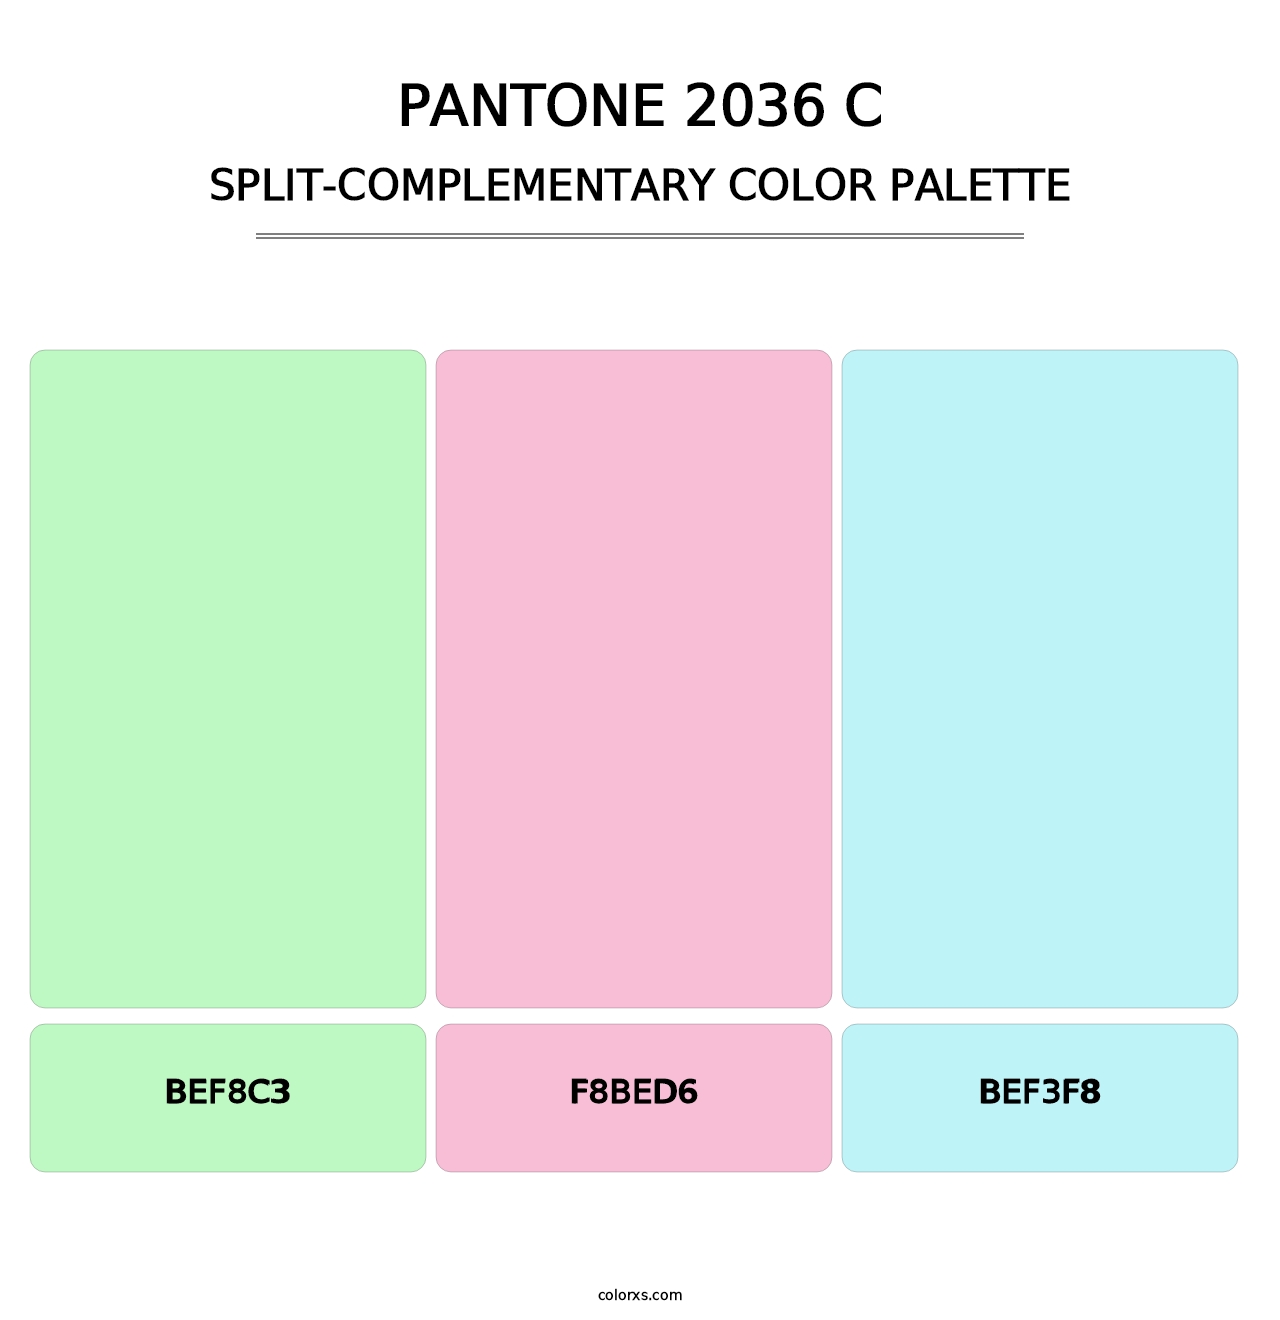 PANTONE 2036 C - Split-Complementary Color Palette